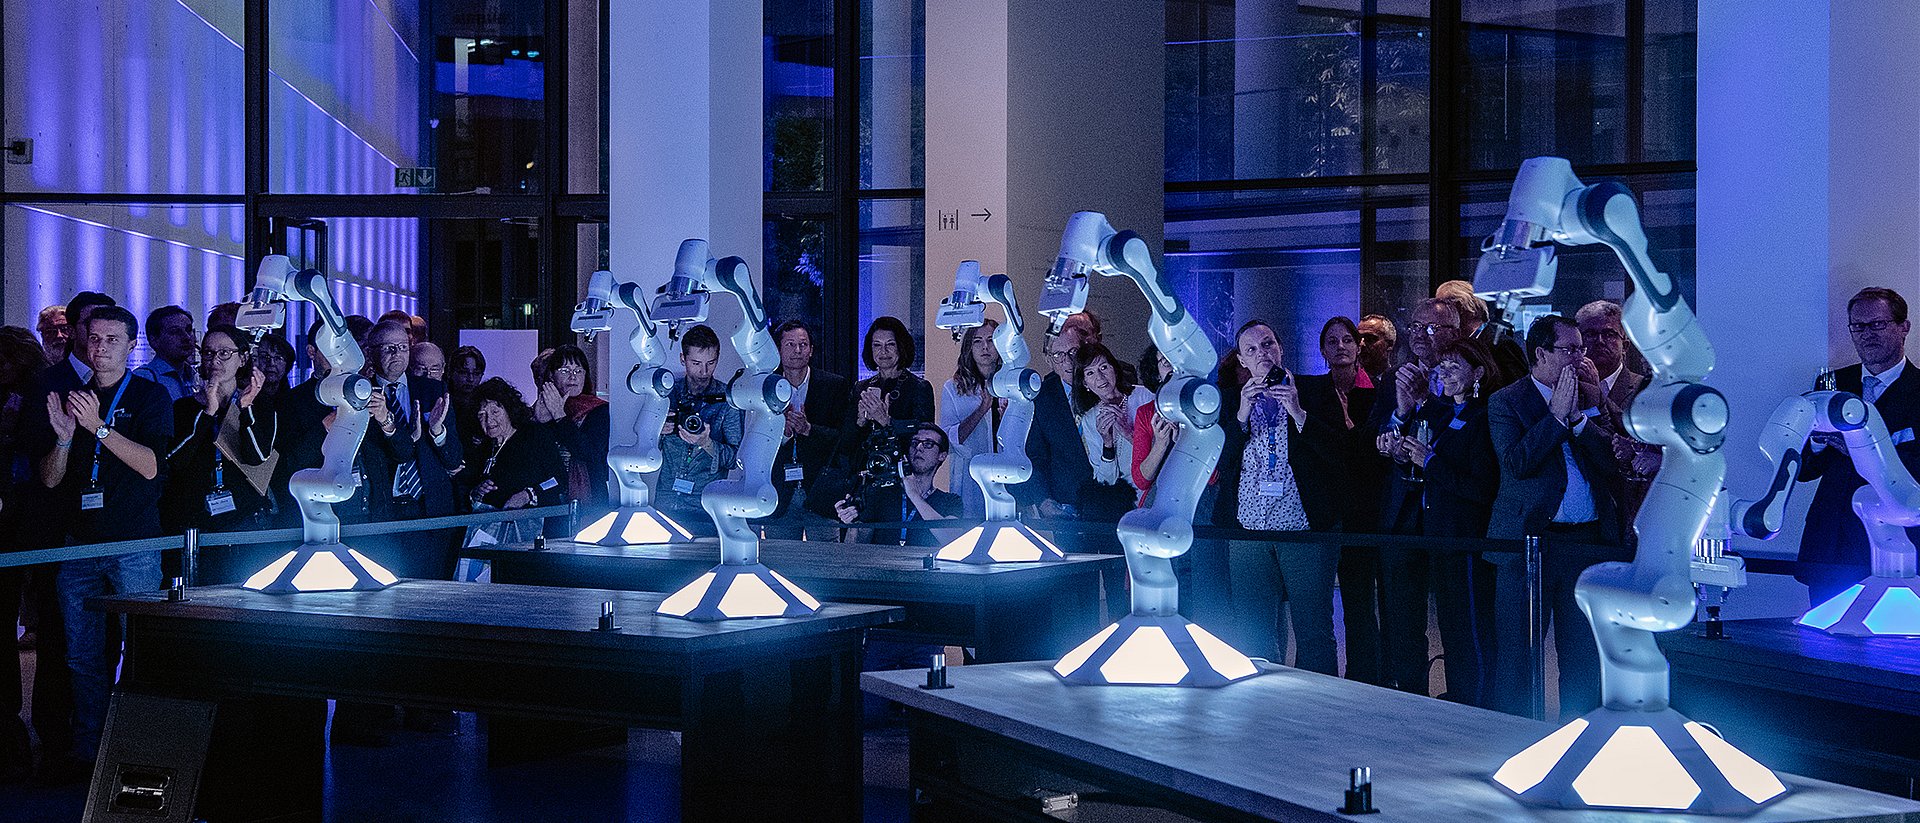 Roboter stehen in einem Kollektiv zusammen und im Hintergrund fotografieren Menschen die Roboter